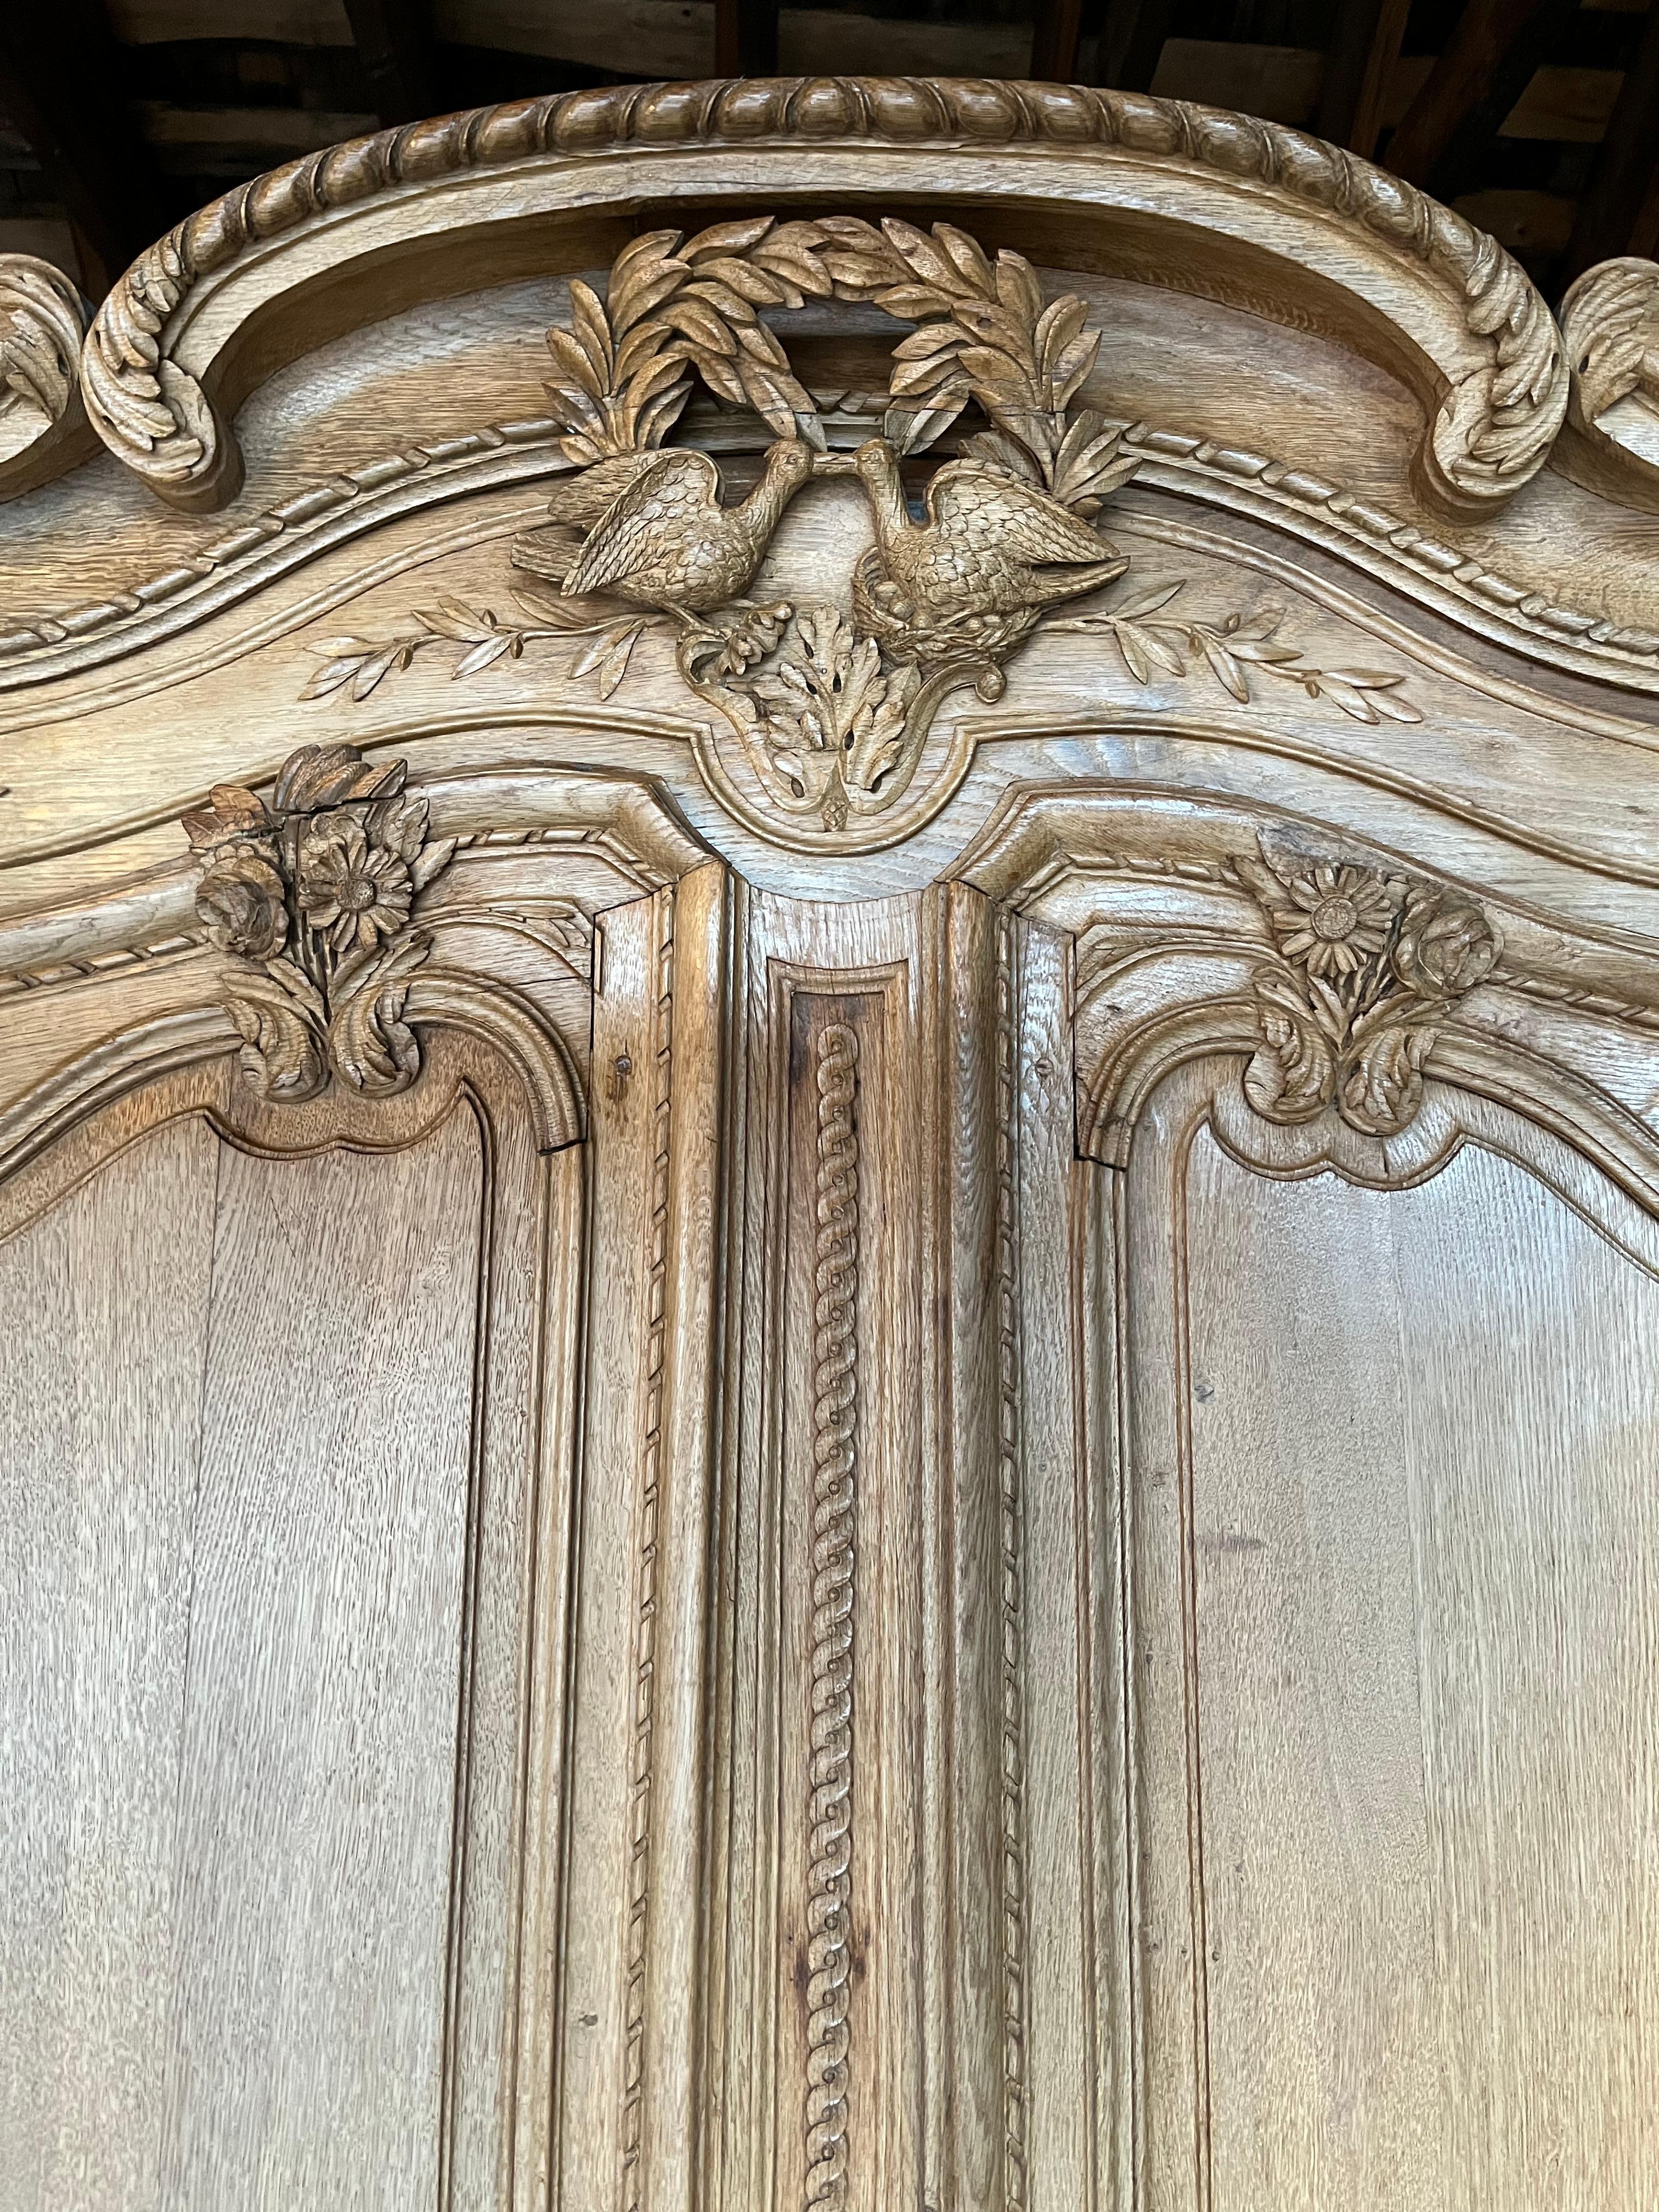 Très bel exemple d'armoire de mariage normande traditionnelle du XVIIIe siècle en chêne blanchi, abondamment sculptée de motifs de jardins et de fleurs, avec un bouquet central d'amours sous la corniche en arc. 
La pièce conserve sa serrure et sa